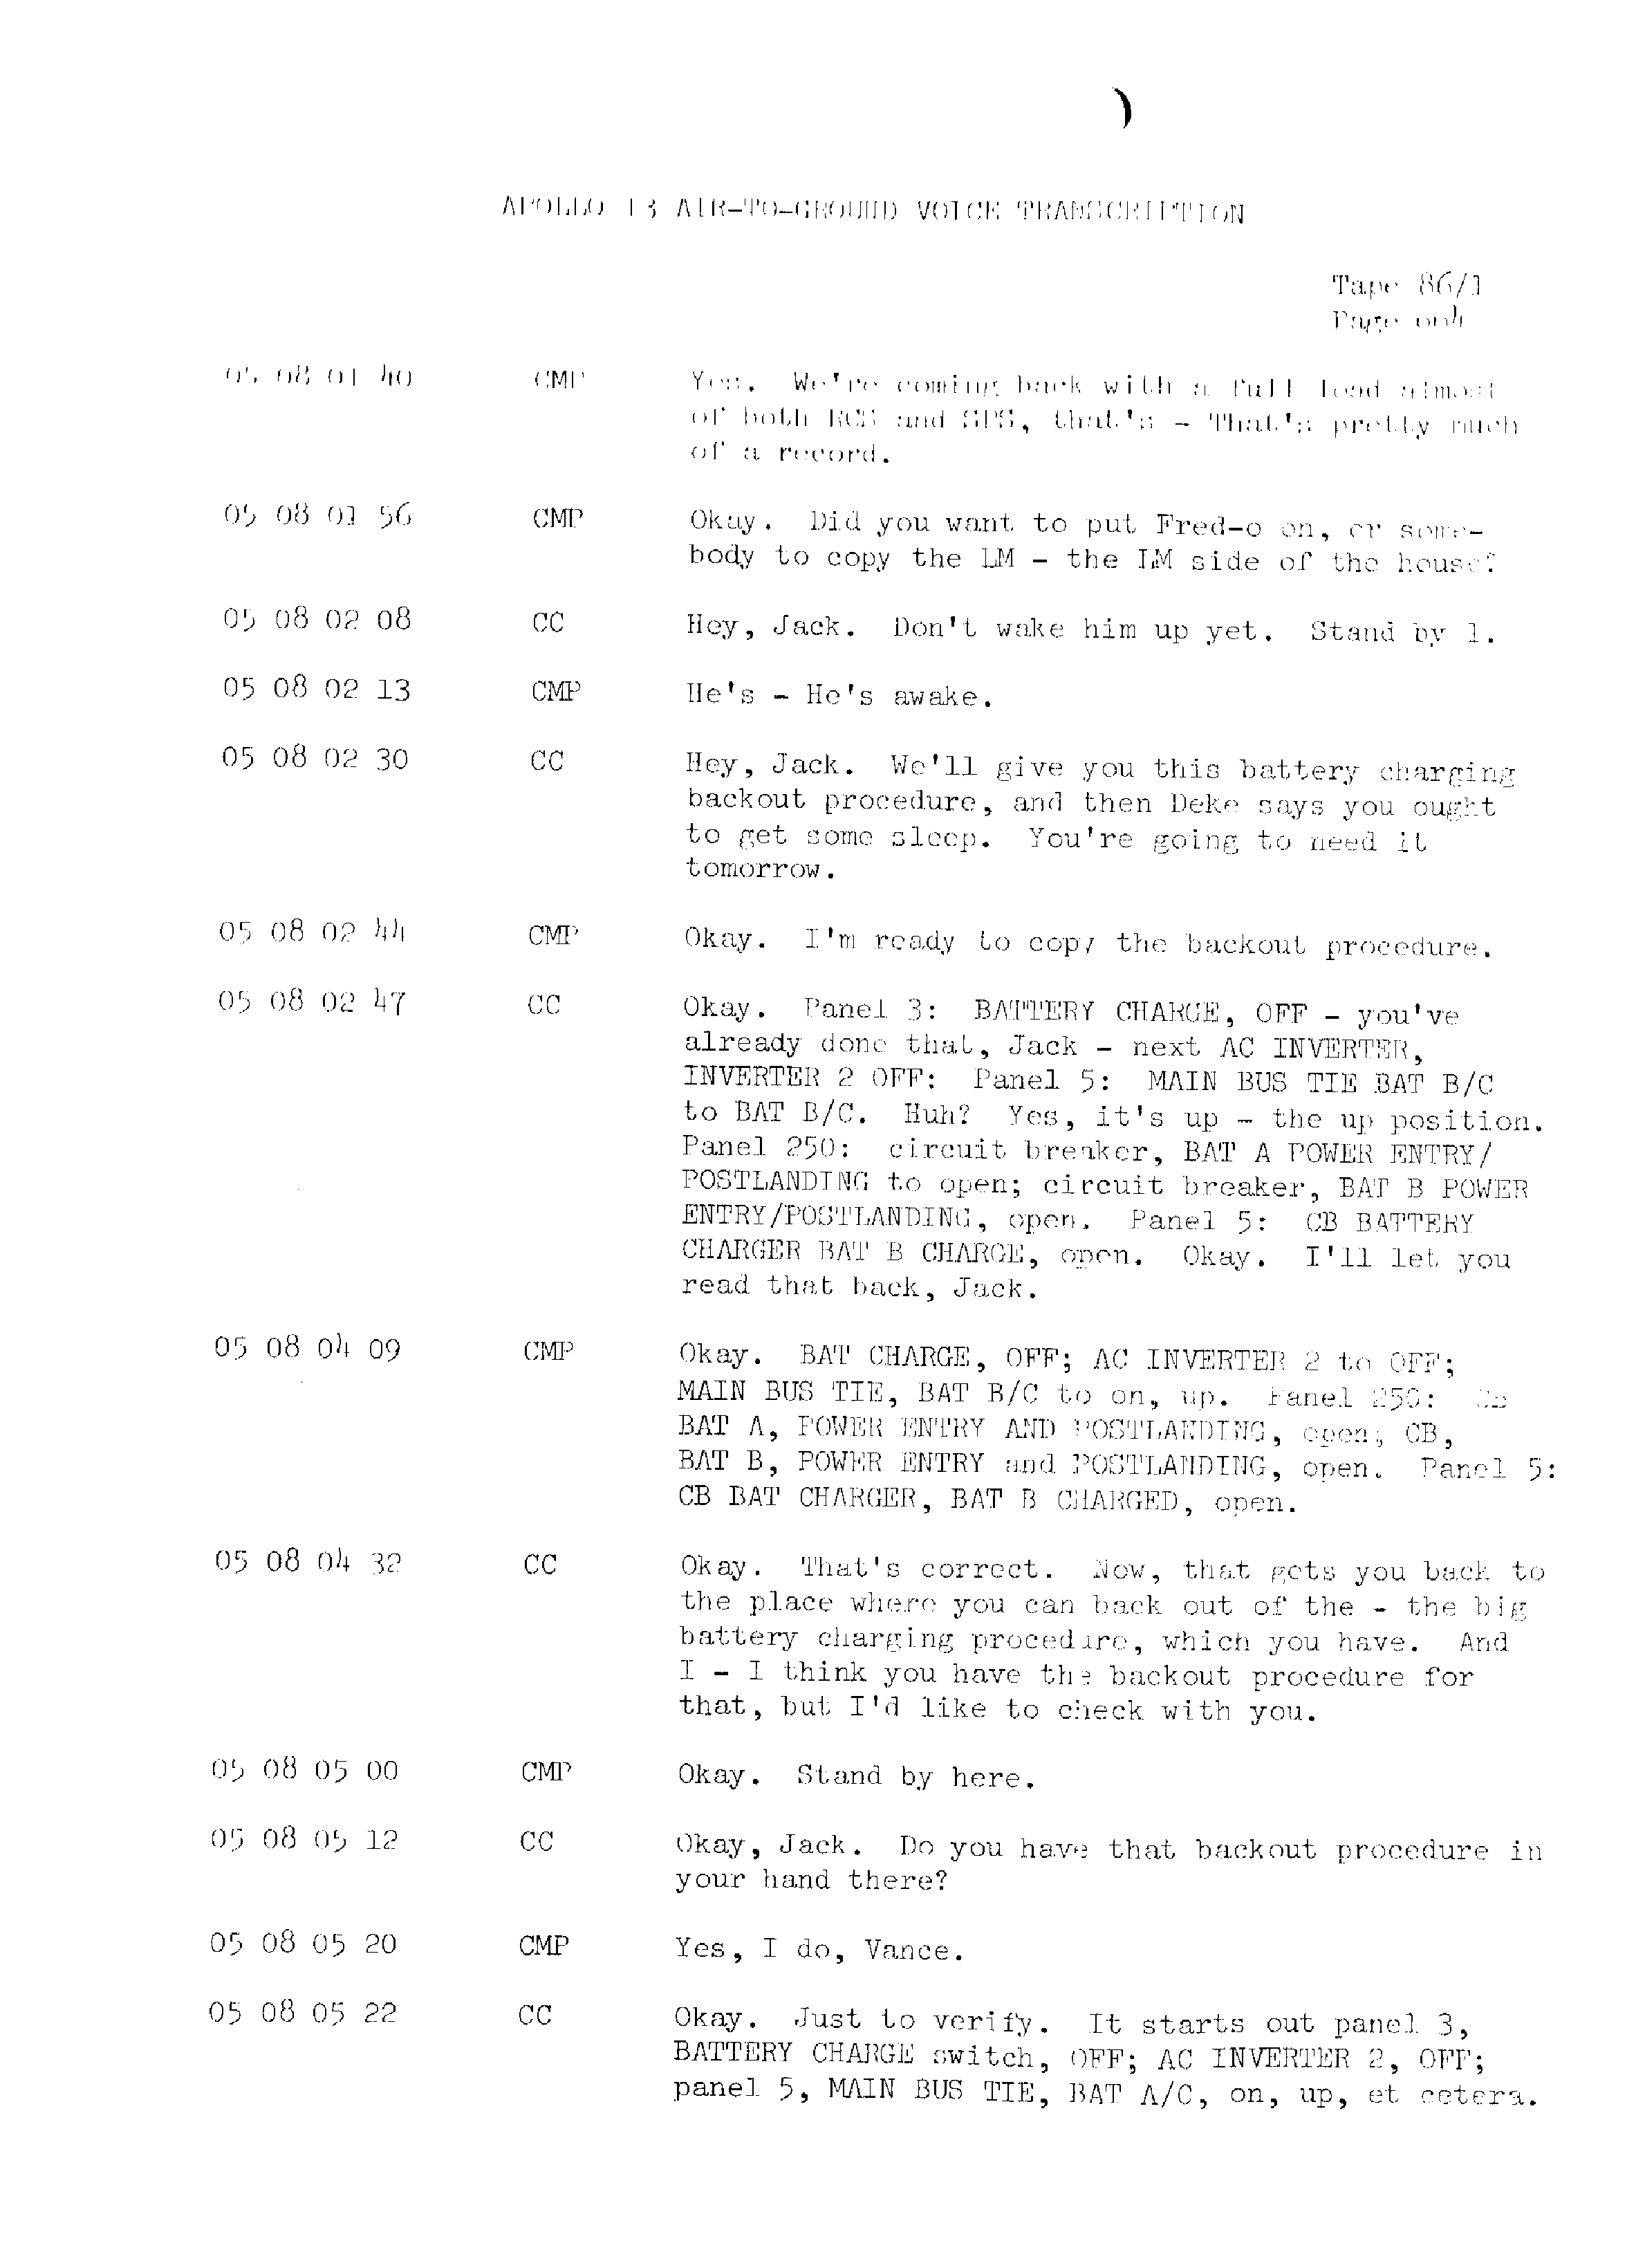 Page 671 of Apollo 13’s original transcript